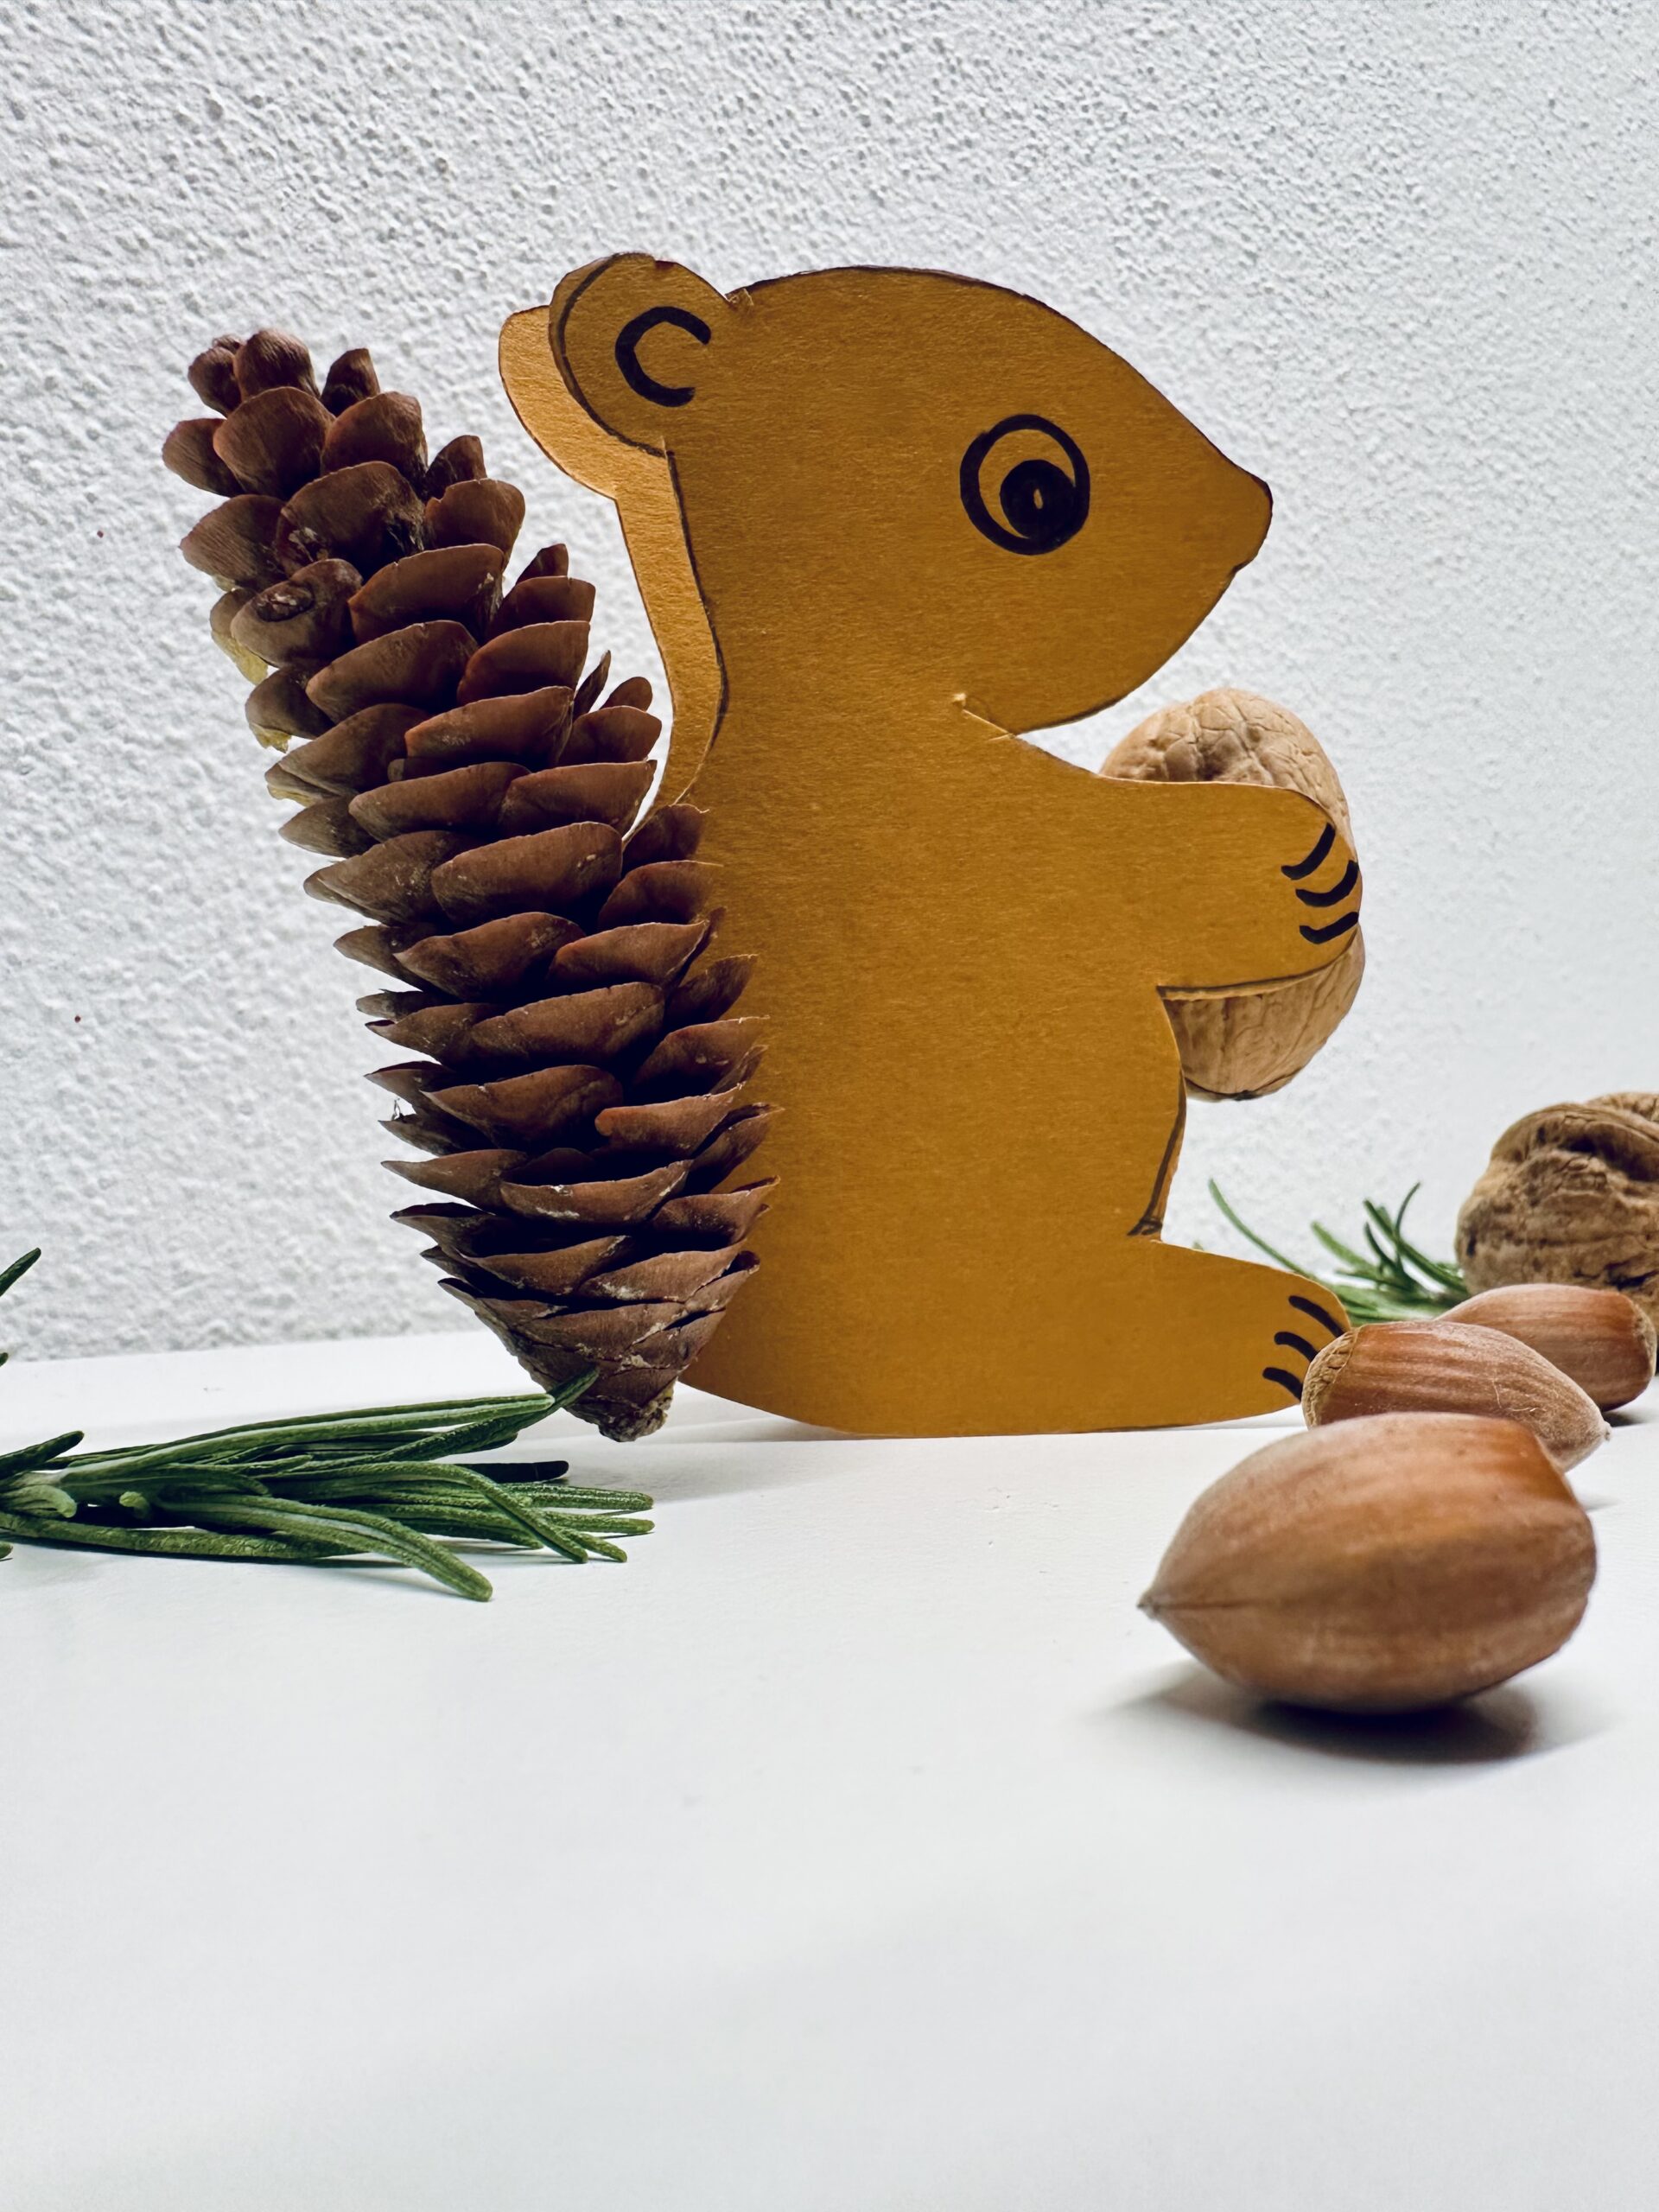 Bild zum Schritt 10 für das Bastel- und DIY-Abenteuer für Kinder: 'Sucht euch ein schönes Plätzchen für das Eichhörnchen.🐿️'